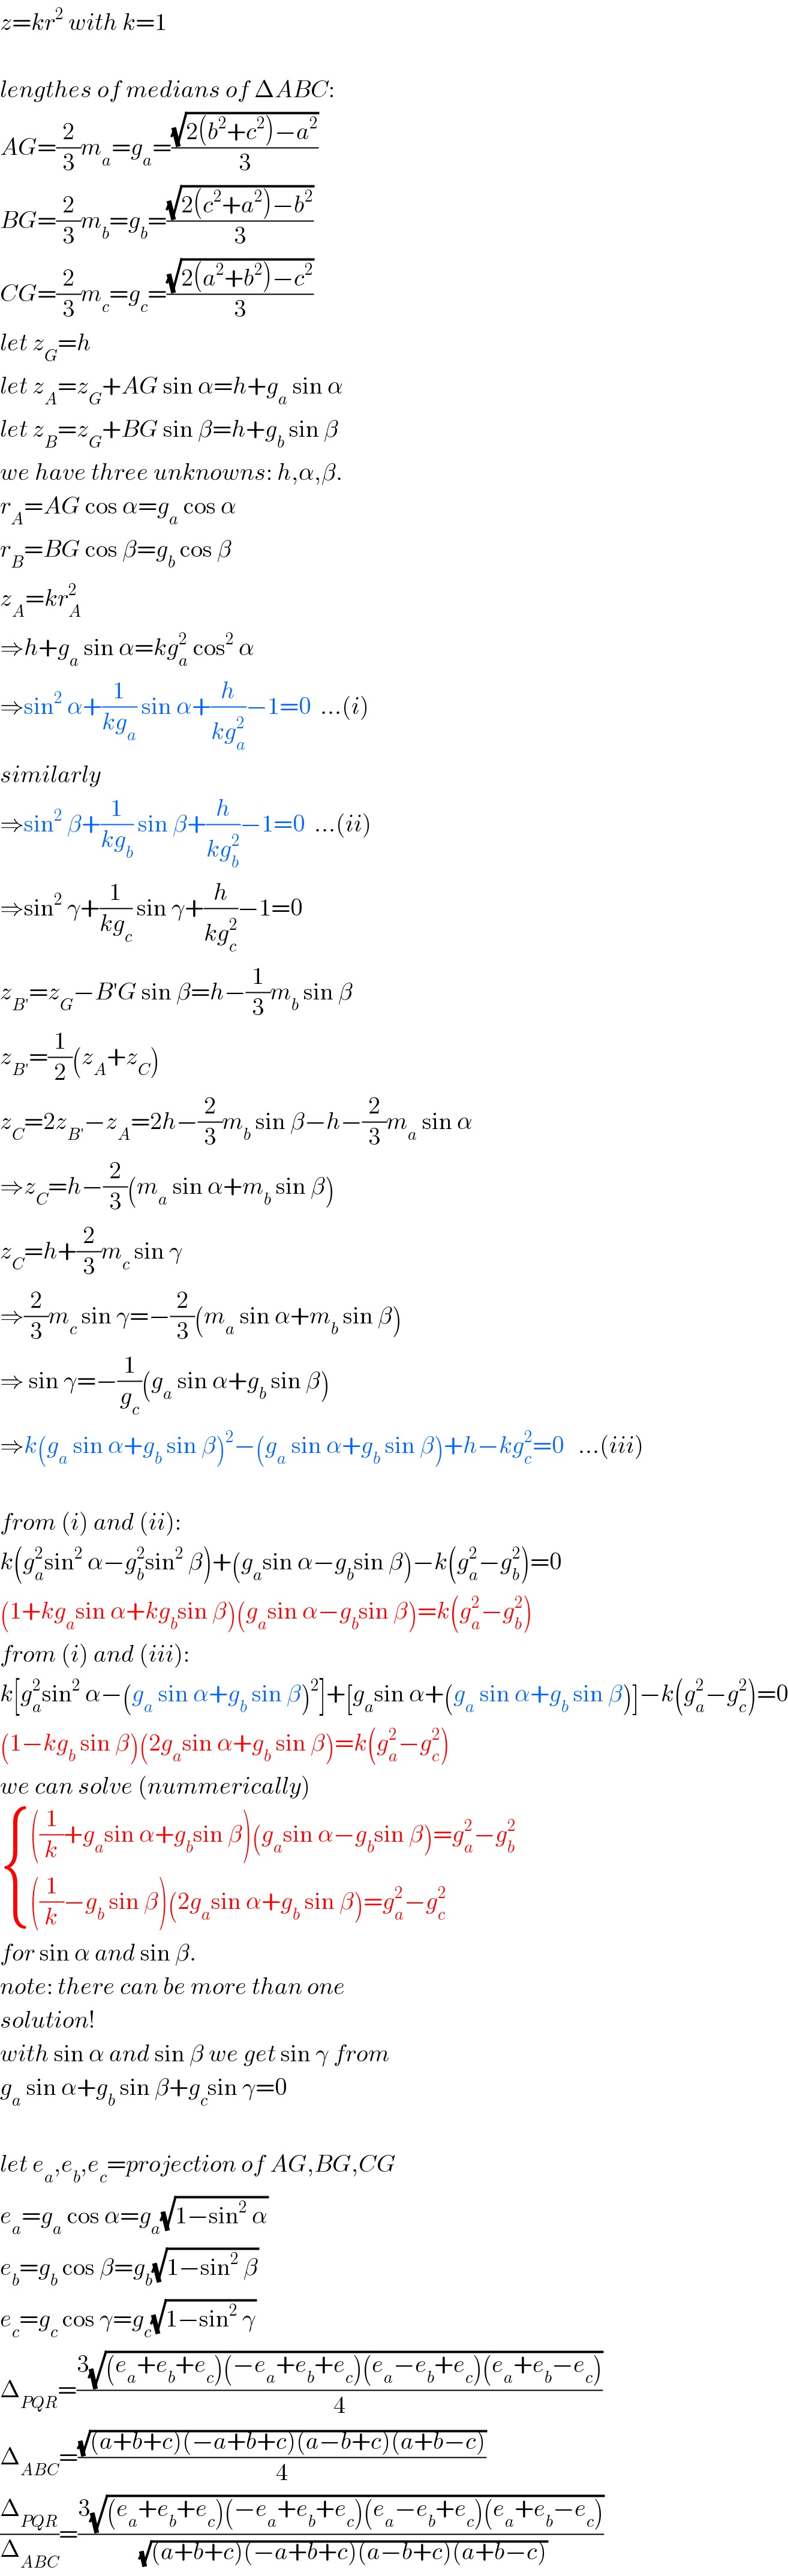 z=kr^2  with k=1    lengthes of medians of ΔABC:  AG=(2/3)m_a =g_a =((√(2(b^2 +c^2 )−a^2 ))/3)  BG=(2/3)m_b =g_b =((√(2(c^2 +a^2 )−b^2 ))/3)  CG=(2/3)m_c =g_c =((√(2(a^2 +b^2 )−c^2 ))/3)  let z_G =h  let z_A =z_G +AG sin α=h+g_a  sin α  let z_B =z_G +BG sin β=h+g_b  sin β  we have three unknowns: h,α,β.  r_A =AG cos α=g_a  cos α  r_B =BG cos β=g_b  cos β  z_A =kr_A ^2   ⇒h+g_a  sin α=kg_a ^2  cos^2  α  ⇒sin^2  α+(1/(kg_a )) sin α+(h/(kg_a ^2 ))−1=0  ...(i)  similarly  ⇒sin^2  β+(1/(kg_b )) sin β+(h/(kg_b ^2 ))−1=0  ...(ii)  ⇒sin^2  γ+(1/(kg_c )) sin γ+(h/(kg_c ^2 ))−1=0  z_(B′) =z_G −B′G sin β=h−(1/3)m_b  sin β  z_(B′) =(1/2)(z_A +z_C )  z_C =2z_(B′) −z_A =2h−(2/3)m_b  sin β−h−(2/3)m_a  sin α  ⇒z_C =h−(2/3)(m_a  sin α+m_b  sin β)  z_C =h+(2/3)m_c  sin γ  ⇒(2/3)m_c  sin γ=−(2/3)(m_a  sin α+m_b  sin β)  ⇒ sin γ=−(1/g_c )(g_a  sin α+g_b  sin β)  ⇒k(g_a  sin α+g_b  sin β)^2 −(g_a  sin α+g_b  sin β)+h−kg_c ^2 =0   ...(iii)    from (i) and (ii):  k(g_a ^2 sin^2  α−g_b ^2 sin^2  β)+(g_a sin α−g_b sin β)−k(g_a ^2 −g_b ^2 )=0  (1+kg_a sin α+kg_b sin β)(g_a sin α−g_b sin β)=k(g_a ^2 −g_b ^2 )  from (i) and (iii):  k[g_a ^2 sin^2  α−(g_a  sin α+g_b  sin β)^2 ]+[g_a sin α+(g_a  sin α+g_b  sin β)]−k(g_a ^2 −g_c ^2 )=0  (1−kg_b  sin β)(2g_a sin α+g_b  sin β)=k(g_a ^2 −g_c ^2 )  we can solve (nummerically)   { ((((1/k)+g_a sin α+g_b sin β)(g_a sin α−g_b sin β)=g_a ^2 −g_b ^2 )),((((1/k)−g_b  sin β)(2g_a sin α+g_b  sin β)=g_a ^2 −g_c ^2 )) :}  for sin α and sin β.  note: there can be more than one  solution!  with sin α and sin β we get sin γ from  g_a  sin α+g_b  sin β+g_c sin γ=0    let e_a ,e_b ,e_c =projection of AG,BG,CG  e_a =g_a  cos α=g_a (√(1−sin^2  α))  e_b =g_b  cos β=g_b (√(1−sin^2  β))  e_c =g_c  cos γ=g_c (√(1−sin^2  γ))  Δ_(PQR) =((3(√((e_a +e_b +e_c )(−e_a +e_b +e_c )(e_a −e_b +e_c )(e_a +e_b −e_c ))))/4)  Δ_(ABC) =((√((a+b+c)(−a+b+c)(a−b+c)(a+b−c)))/4)  (Δ_(PQR) /Δ_(ABC) )=((3(√((e_a +e_b +e_c )(−e_a +e_b +e_c )(e_a −e_b +e_c )(e_a +e_b −e_c ))))/(√((a+b+c)(−a+b+c)(a−b+c)(a+b−c))))  